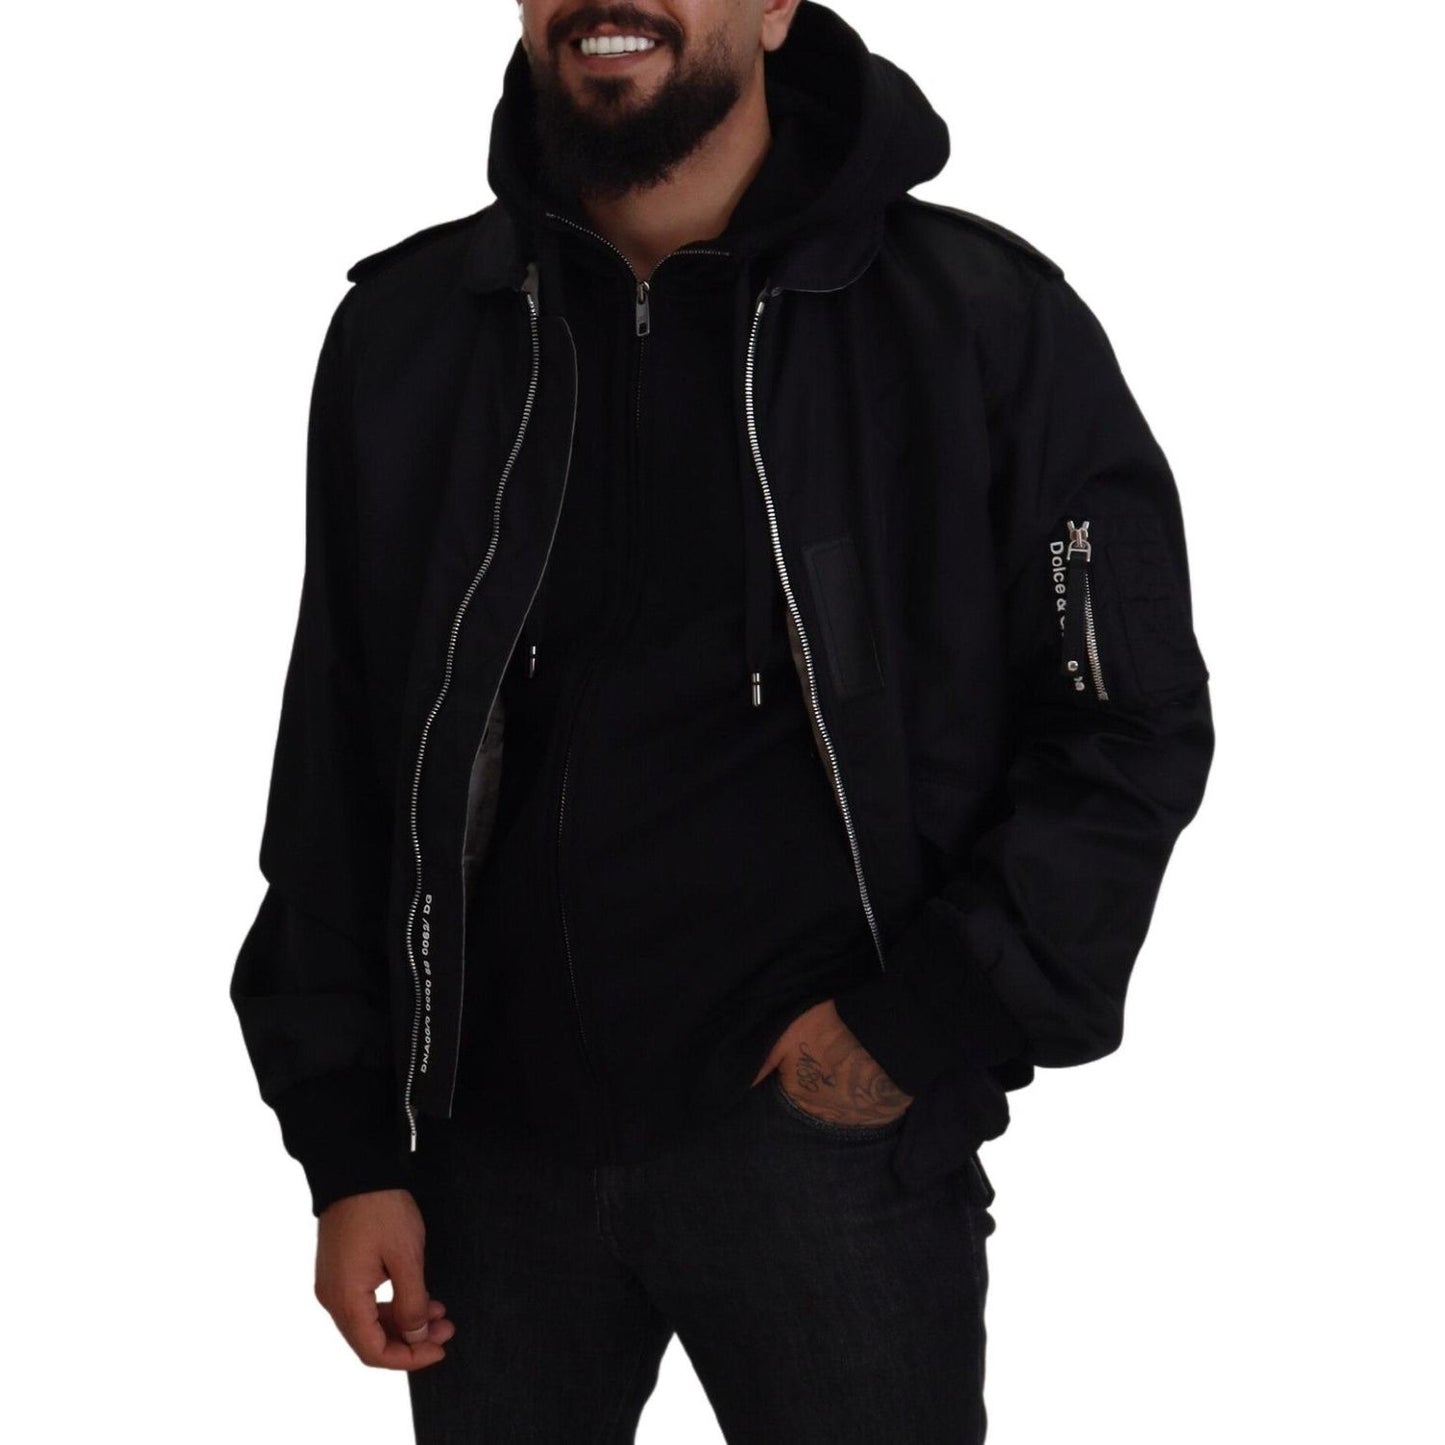 Dolce & Gabbana Sleek Black Hooded Bomber Jacket black-nylon-hooded-full-zip-men-coat-jacket-1